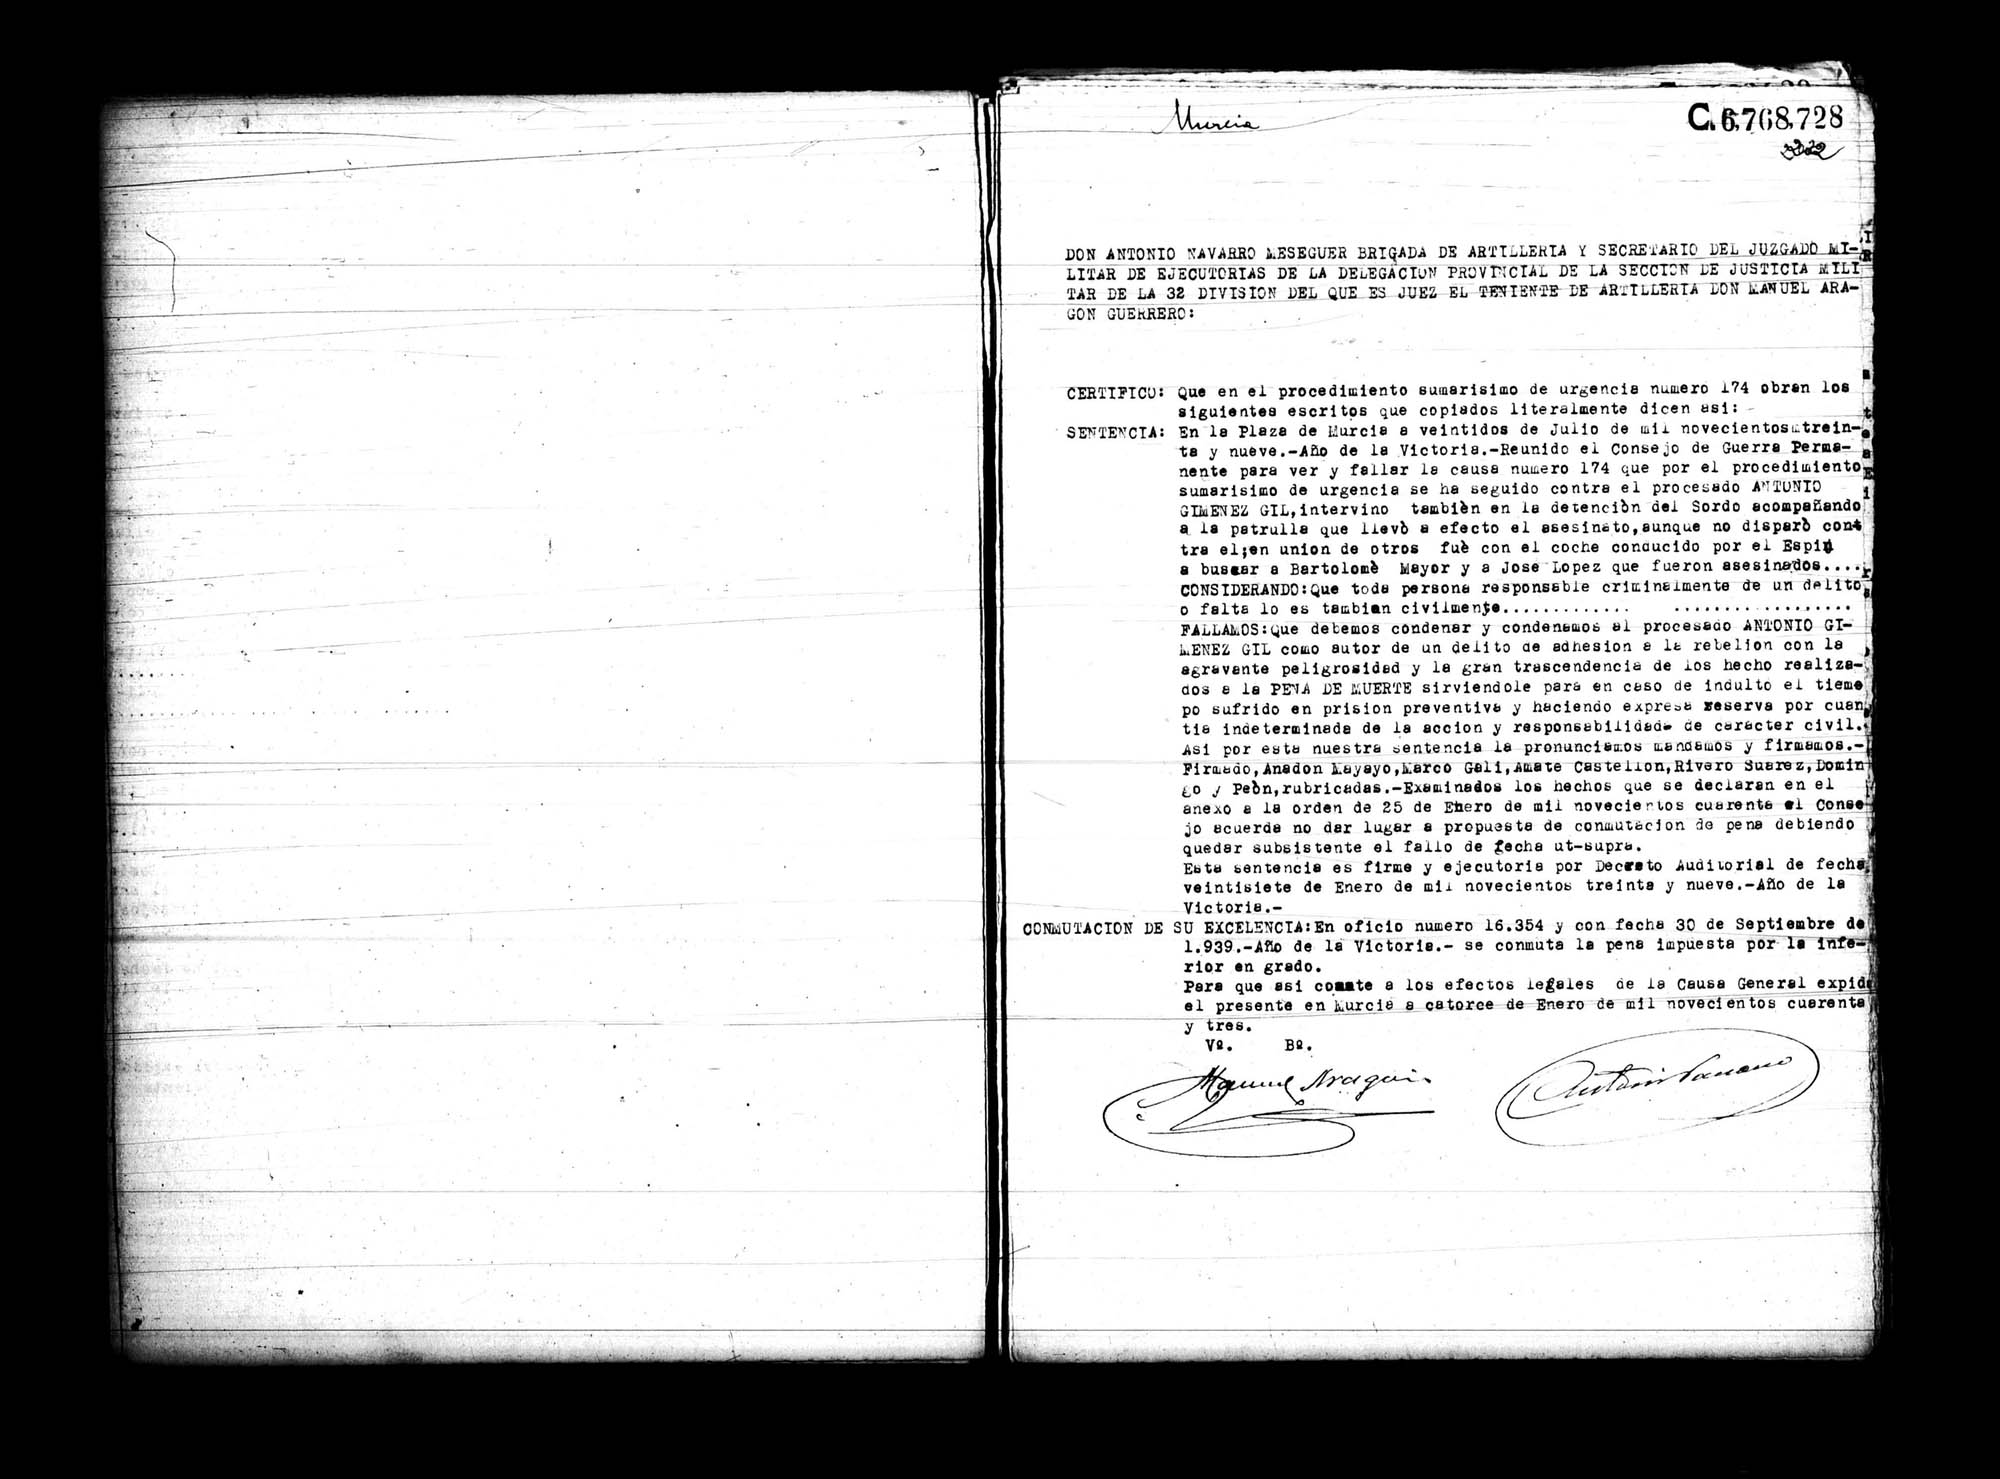 Certificado de la sentencia pronunciada contra Antonio Giménez Gil, causa 174, el 22 de julio de 1939 en Murcia.